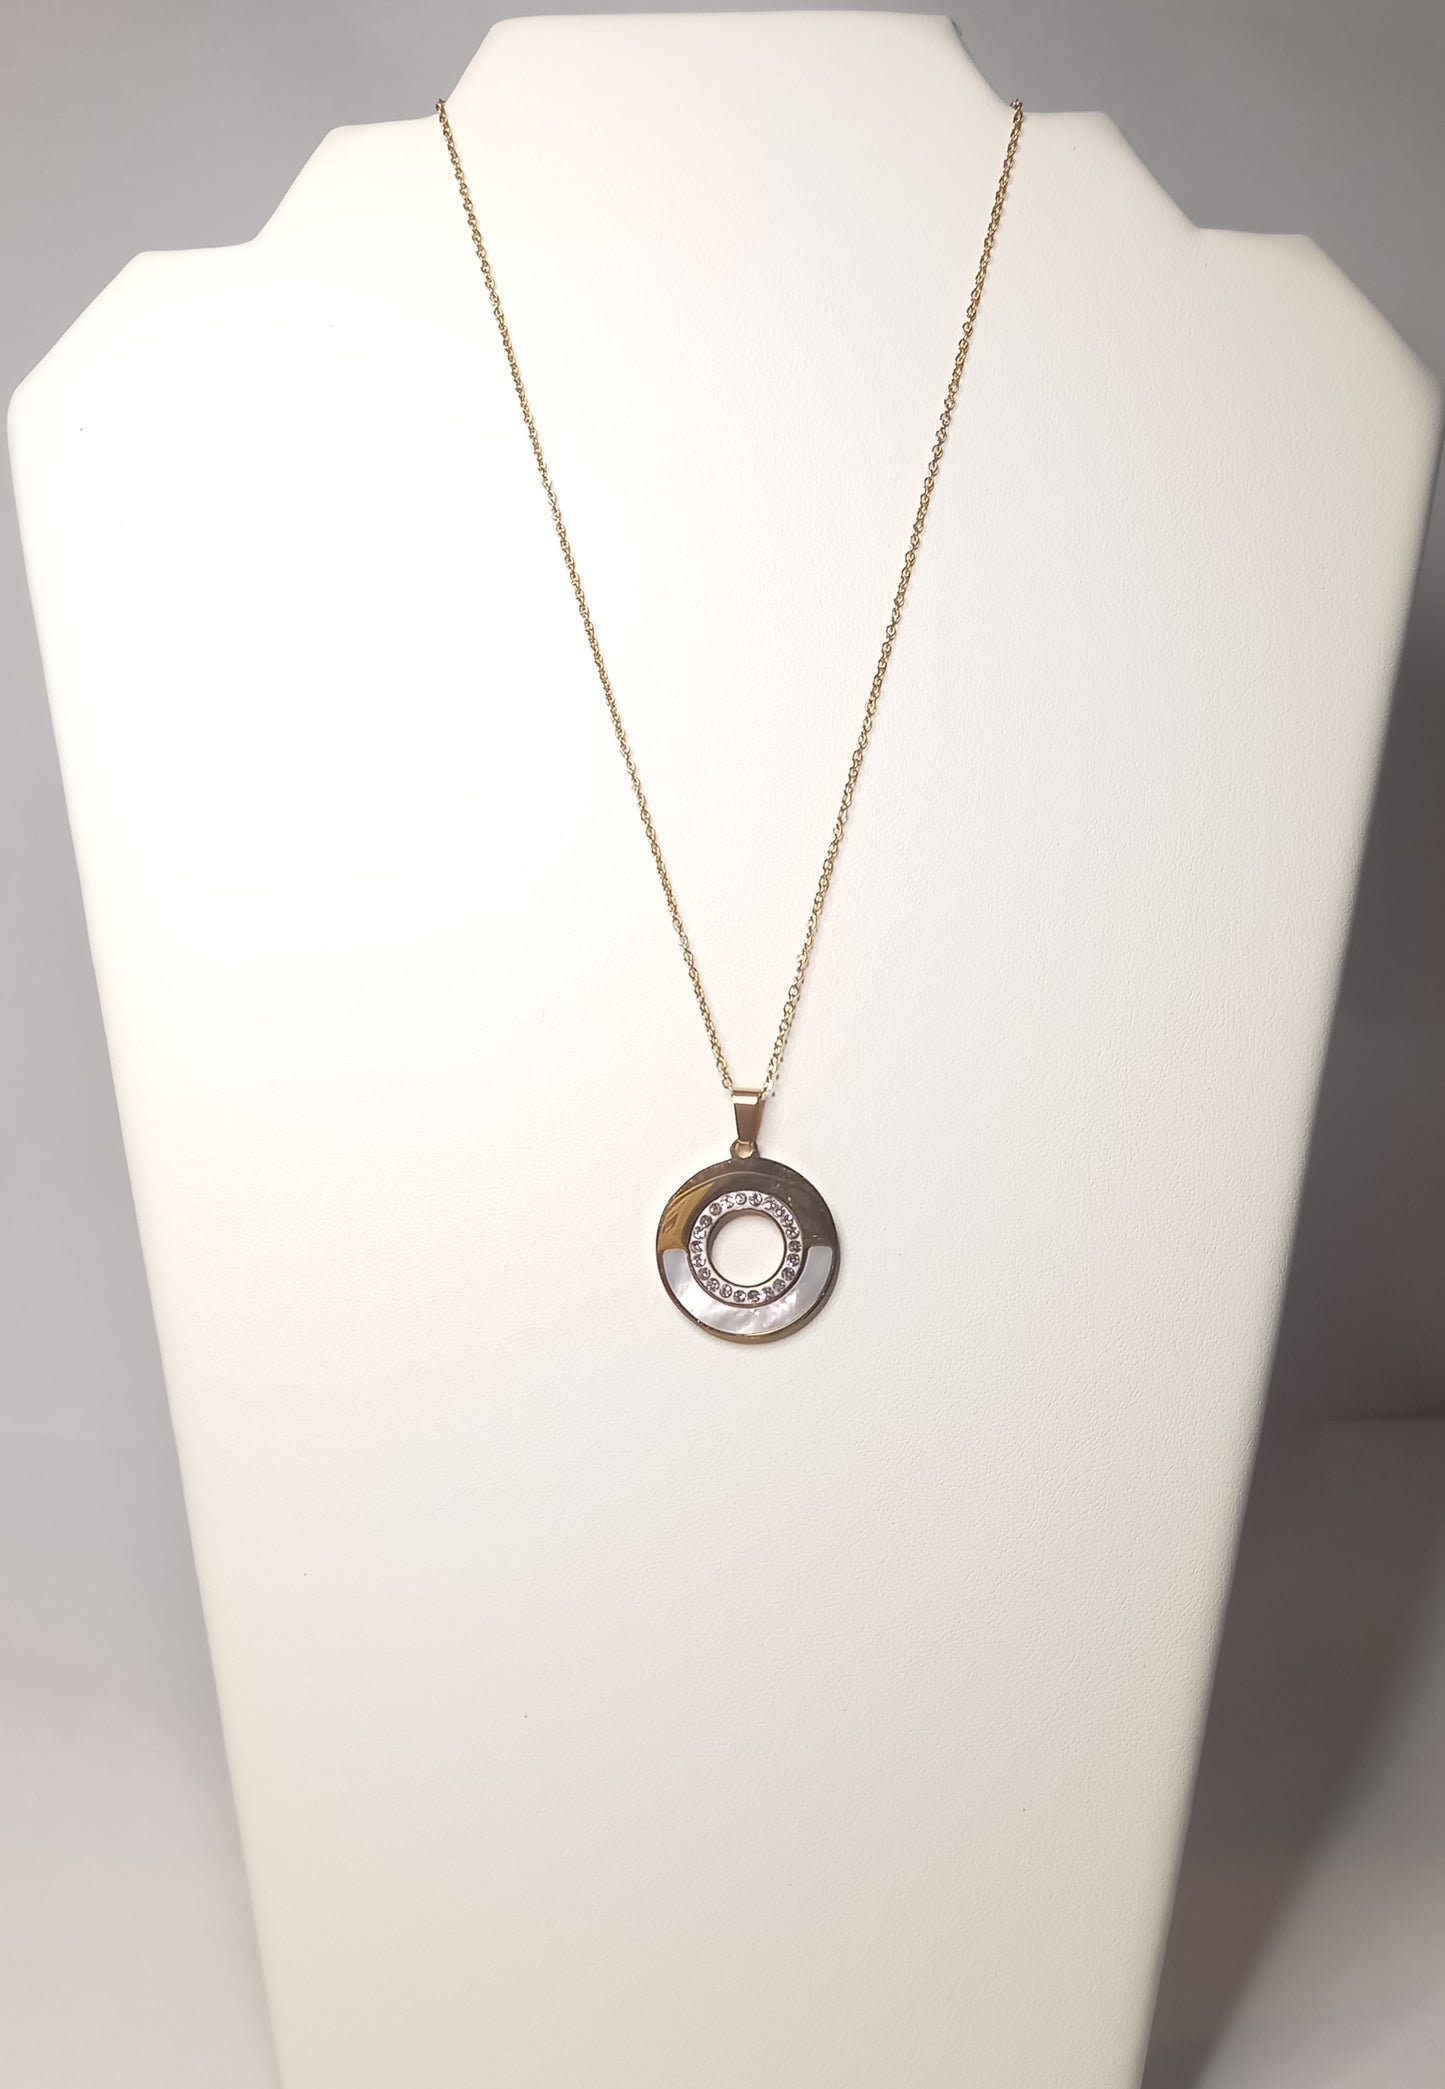 Saturn necklace